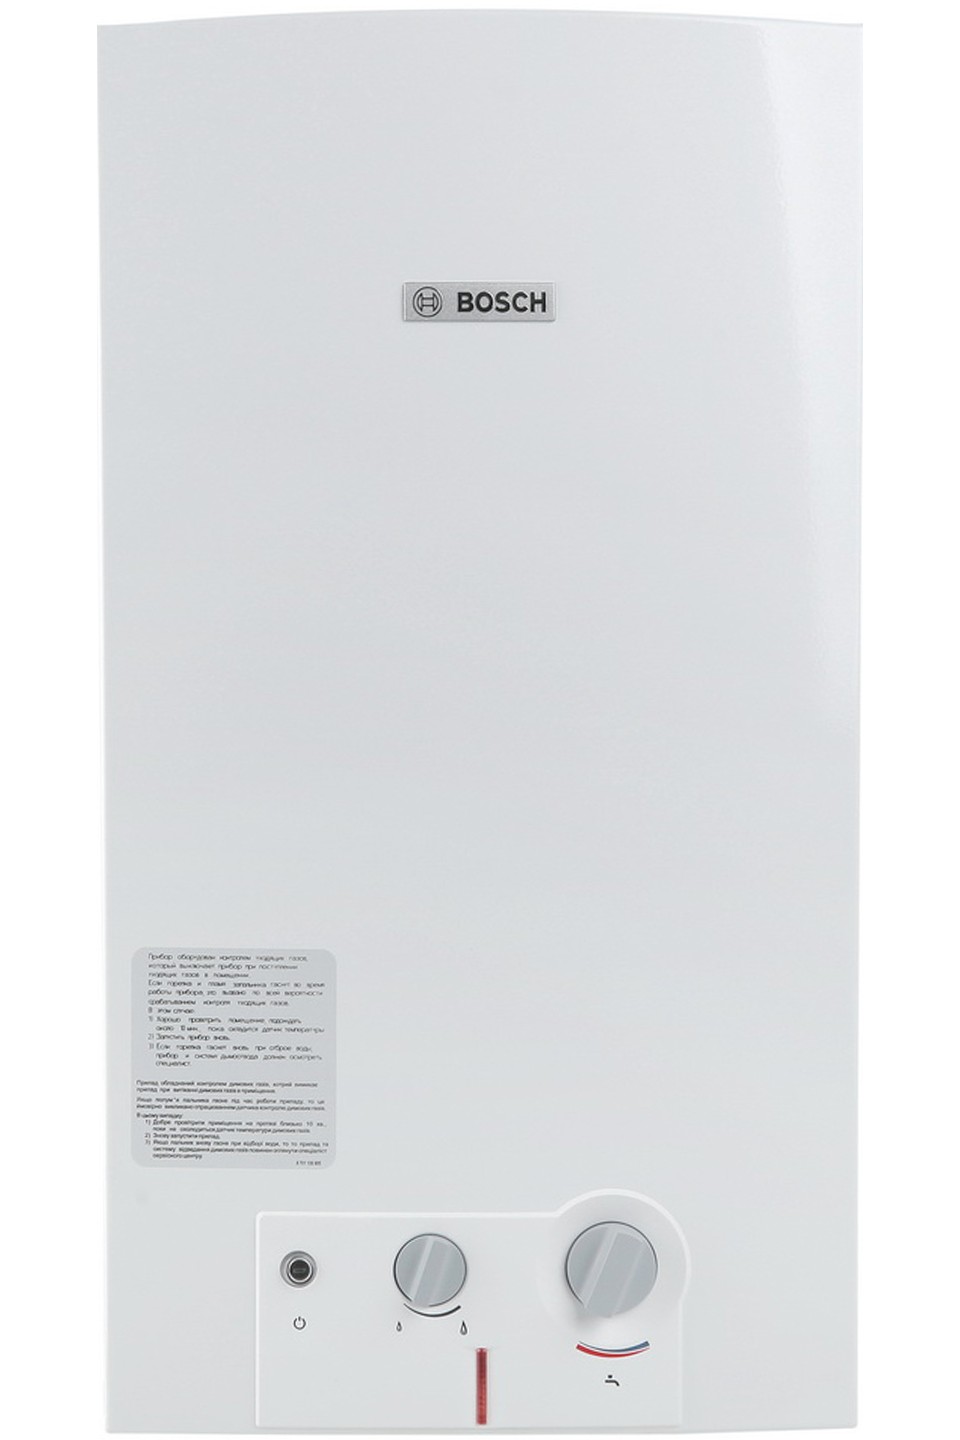 Отзывы газовая колонка на 13 литров/минуту Bosch Therm 4000 O WR 13-2 B (7702331718) в Украине